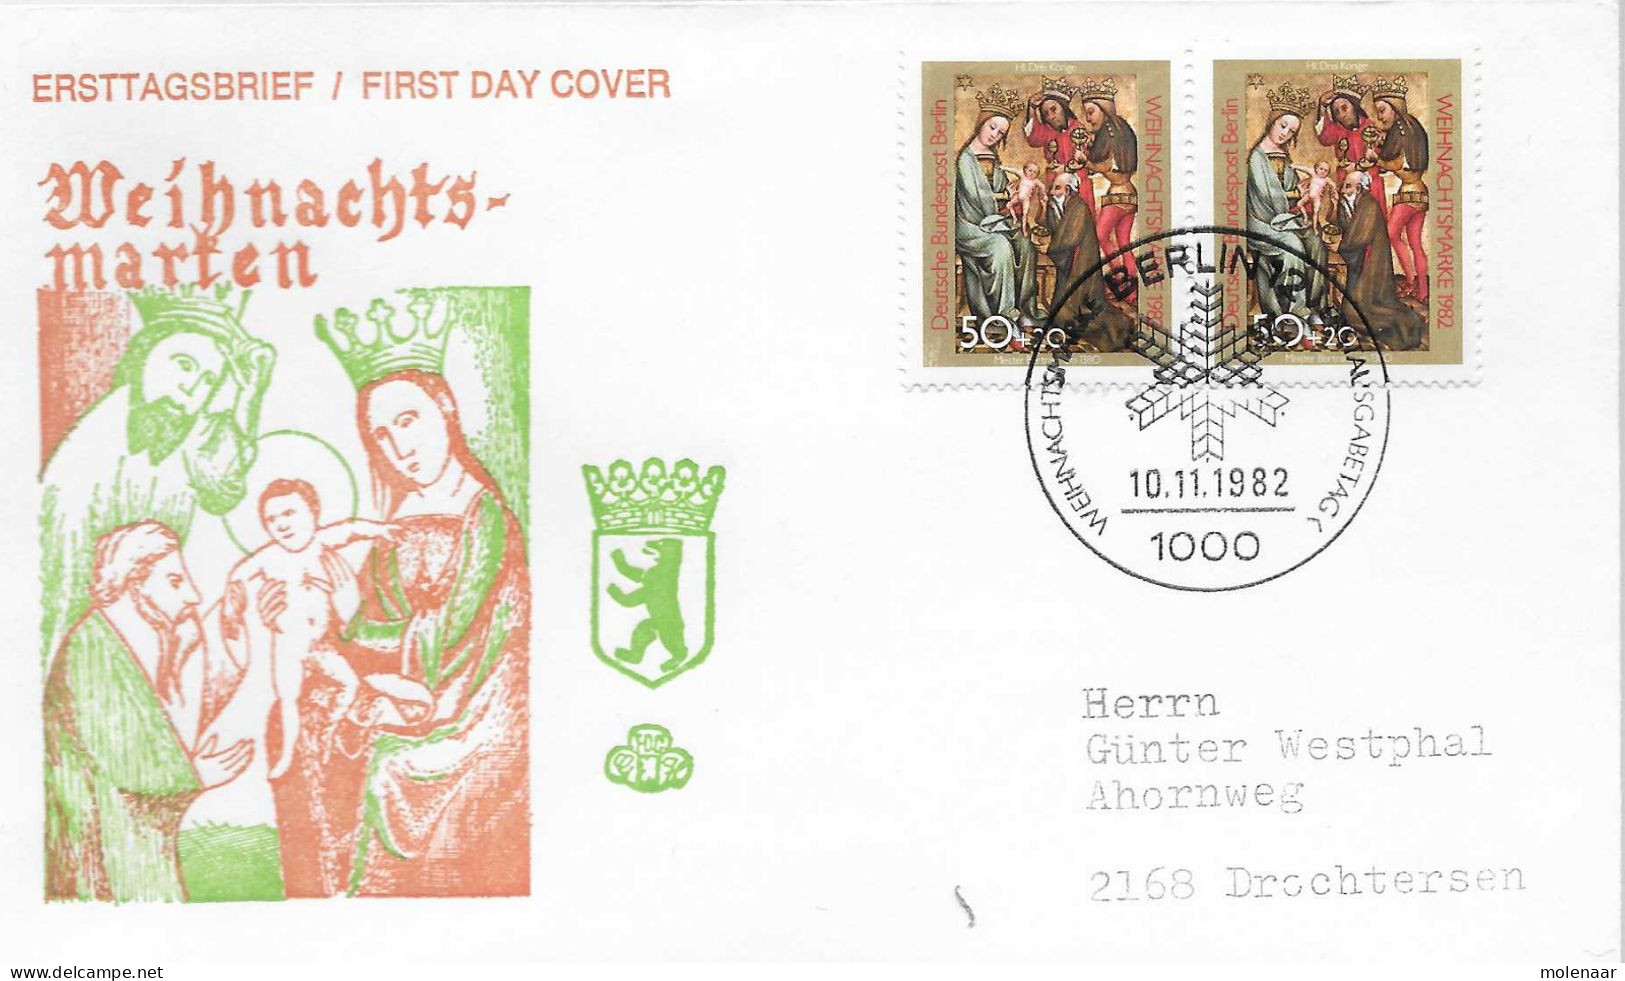 Postzegels > Europa > Duitsland > Berlijn > 1980-1990> Brief Met No. 698 2x (17184) - Lettres & Documents